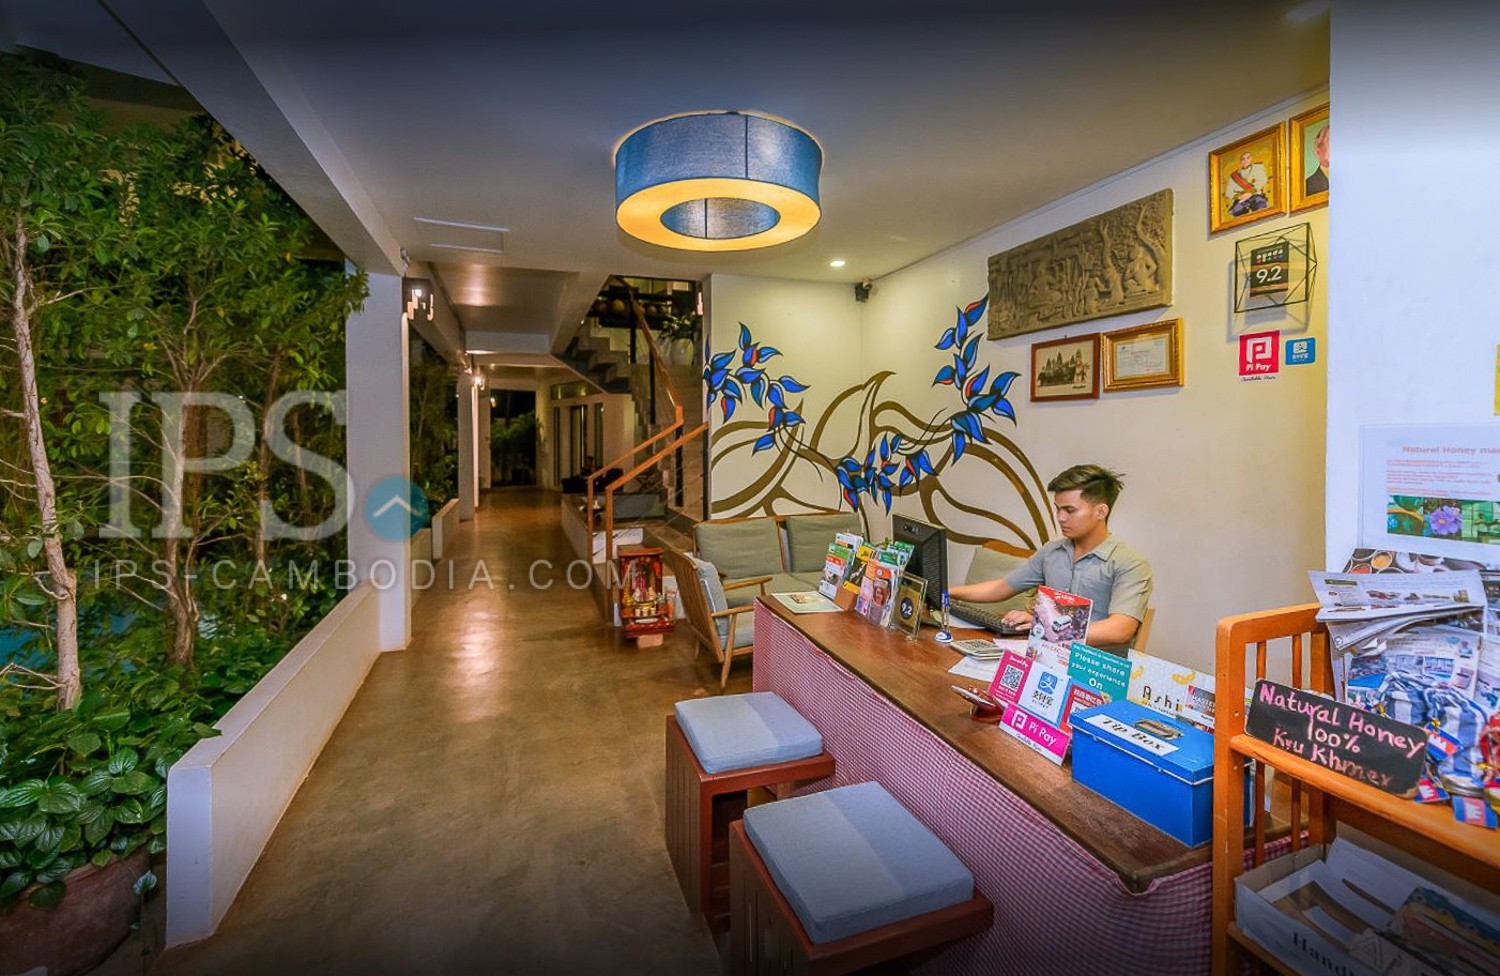 10 Bedroom Boutique Hotel For Sale - Sala Kamreuk, Siem Reap